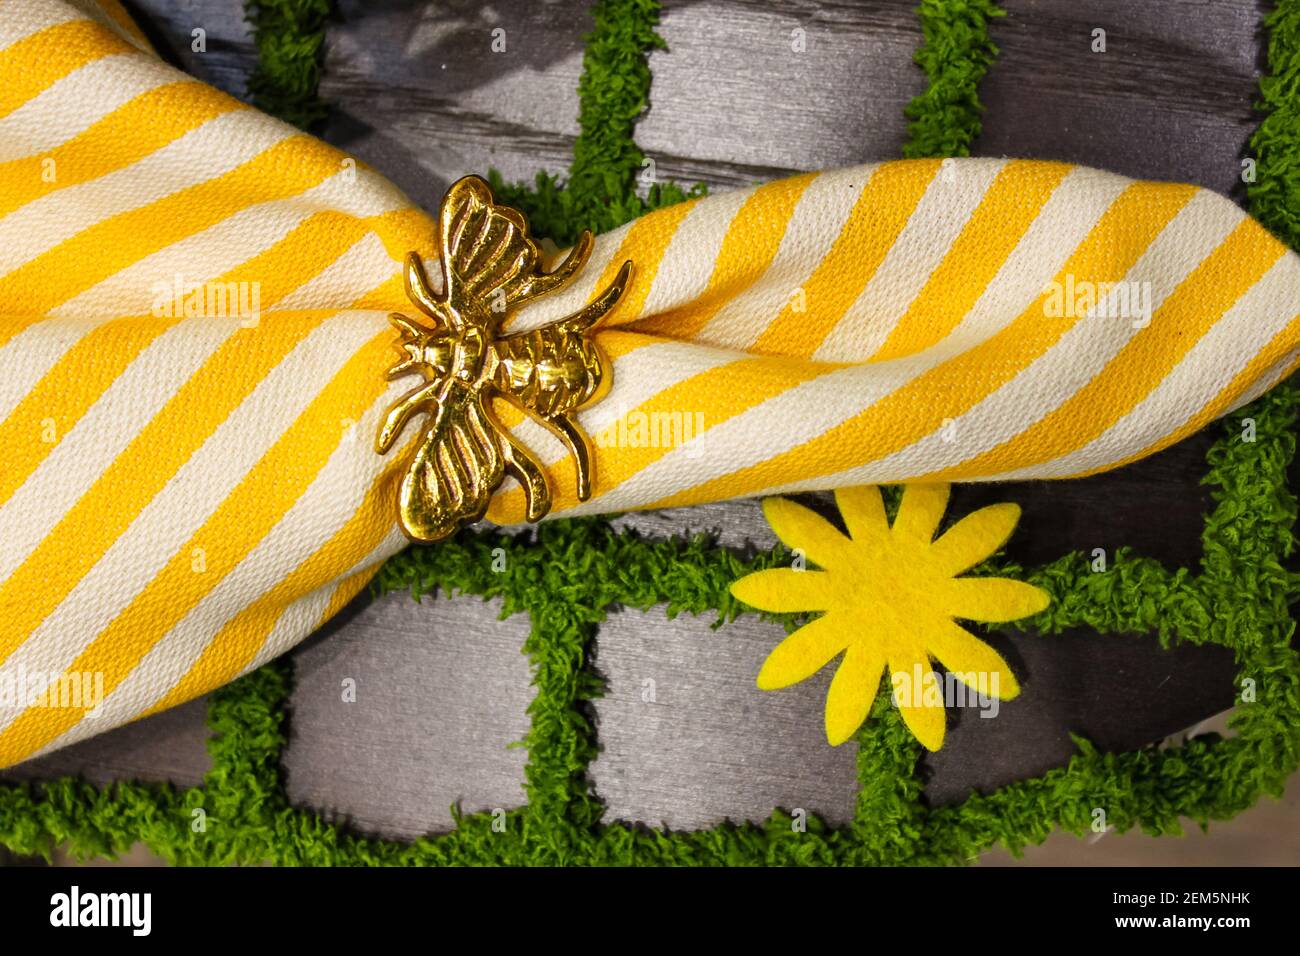 Gelb-weiße, knackige Leinenserviette mit goldener Bienenserviette Ring auf einem Tischset, das aussieht wie Pflastersteine mit Gras – Frühjahrsthema Stockfoto